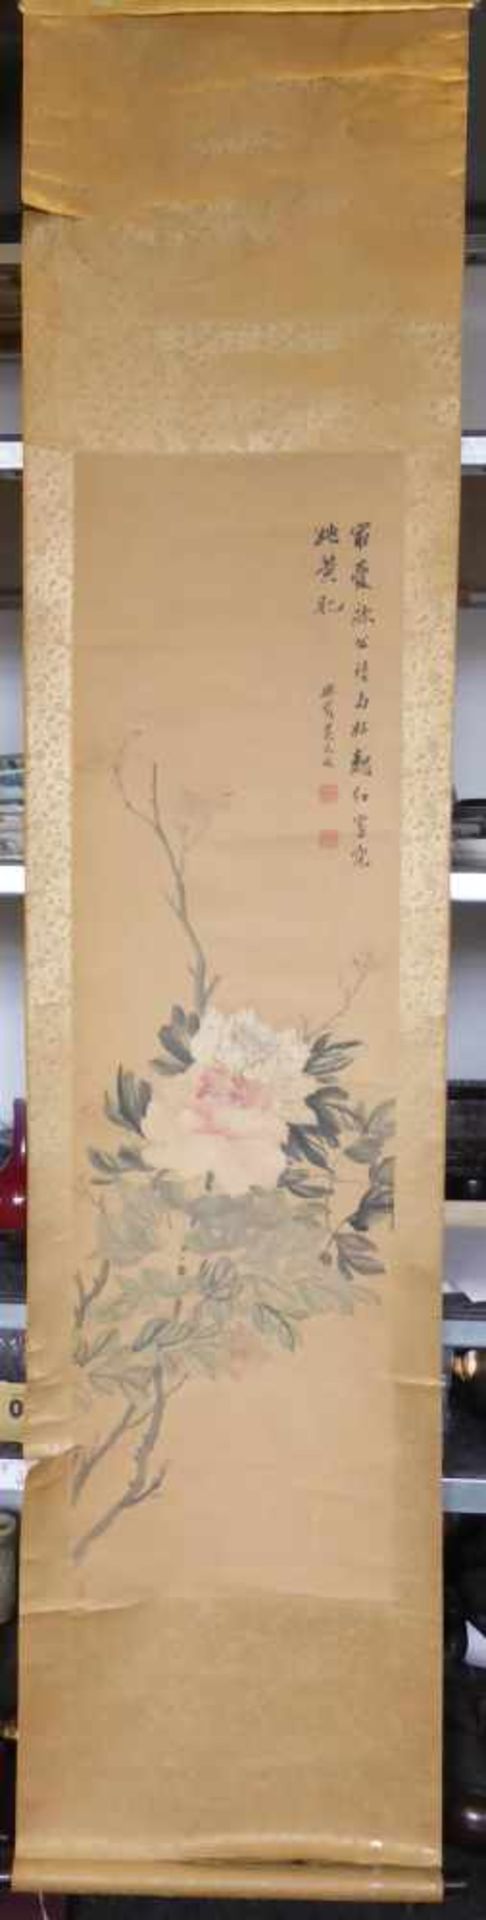 WU, XIZAI1799 Jiangsu - 1870 - zugeschrieben. Peonies. China. 19th c. Ink and light colors on paper. - Image 2 of 3